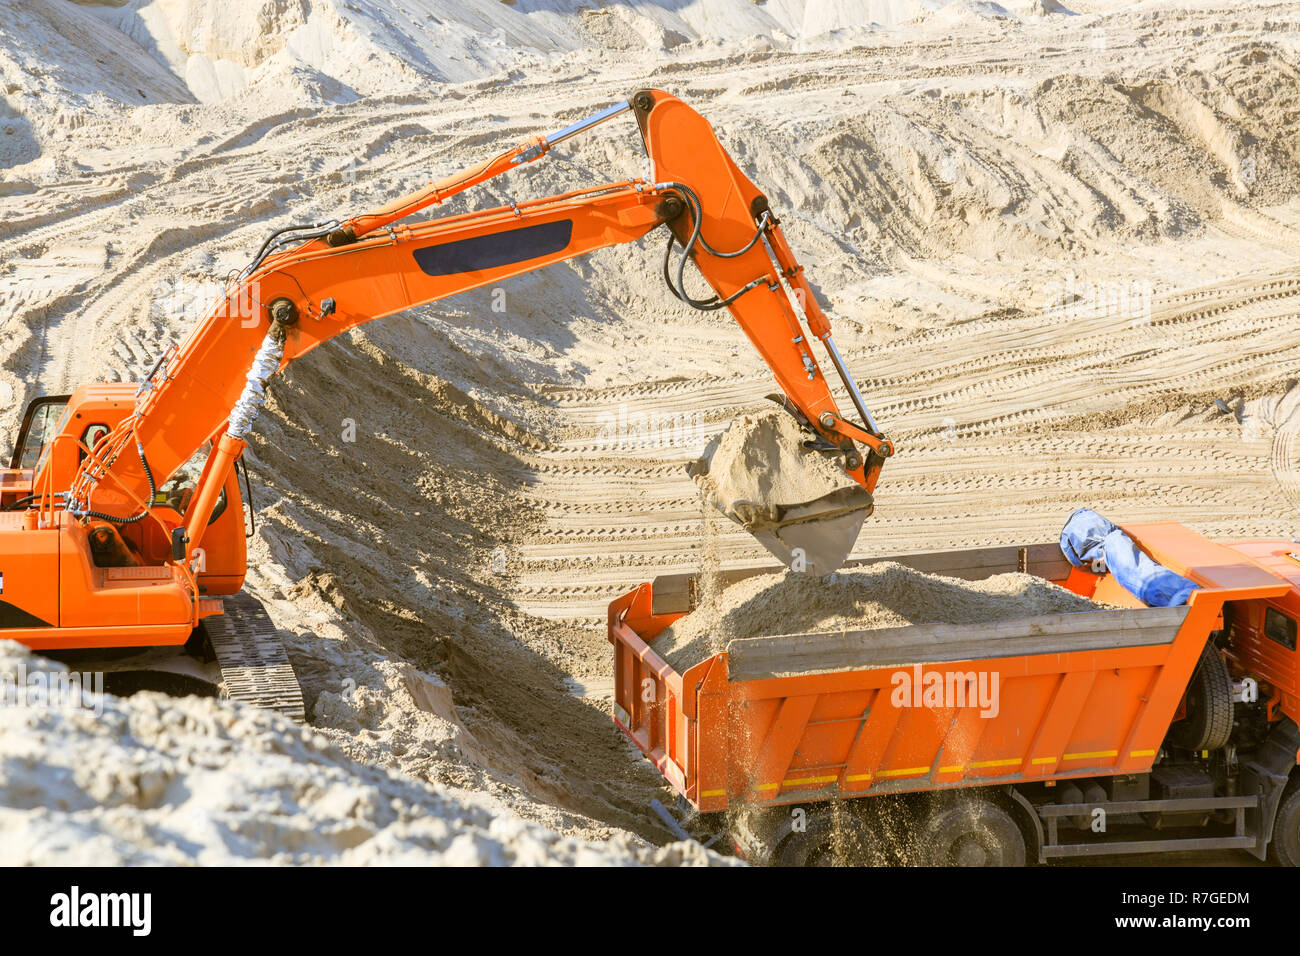 Arbeit der Bagger und Lkw an einer sand Steinbruch. Bagger laden Sand in einen Dump Truck. Stockfoto